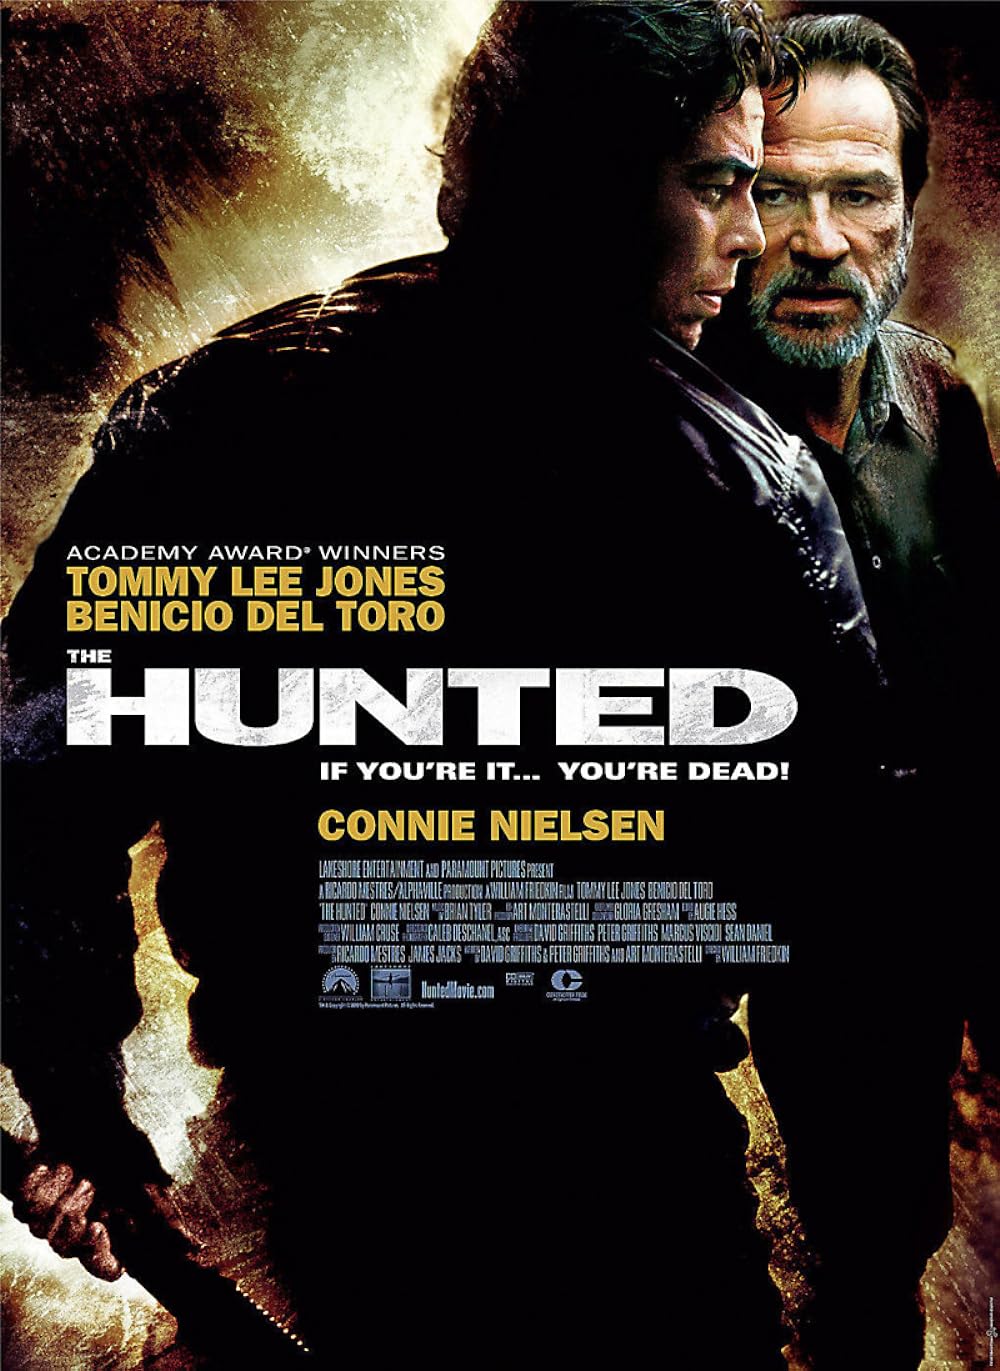 The Hunted (2003) 192Kbps 23.976Fps 48Khz 2.0Ch DigitalTV Turkish Audio TAC